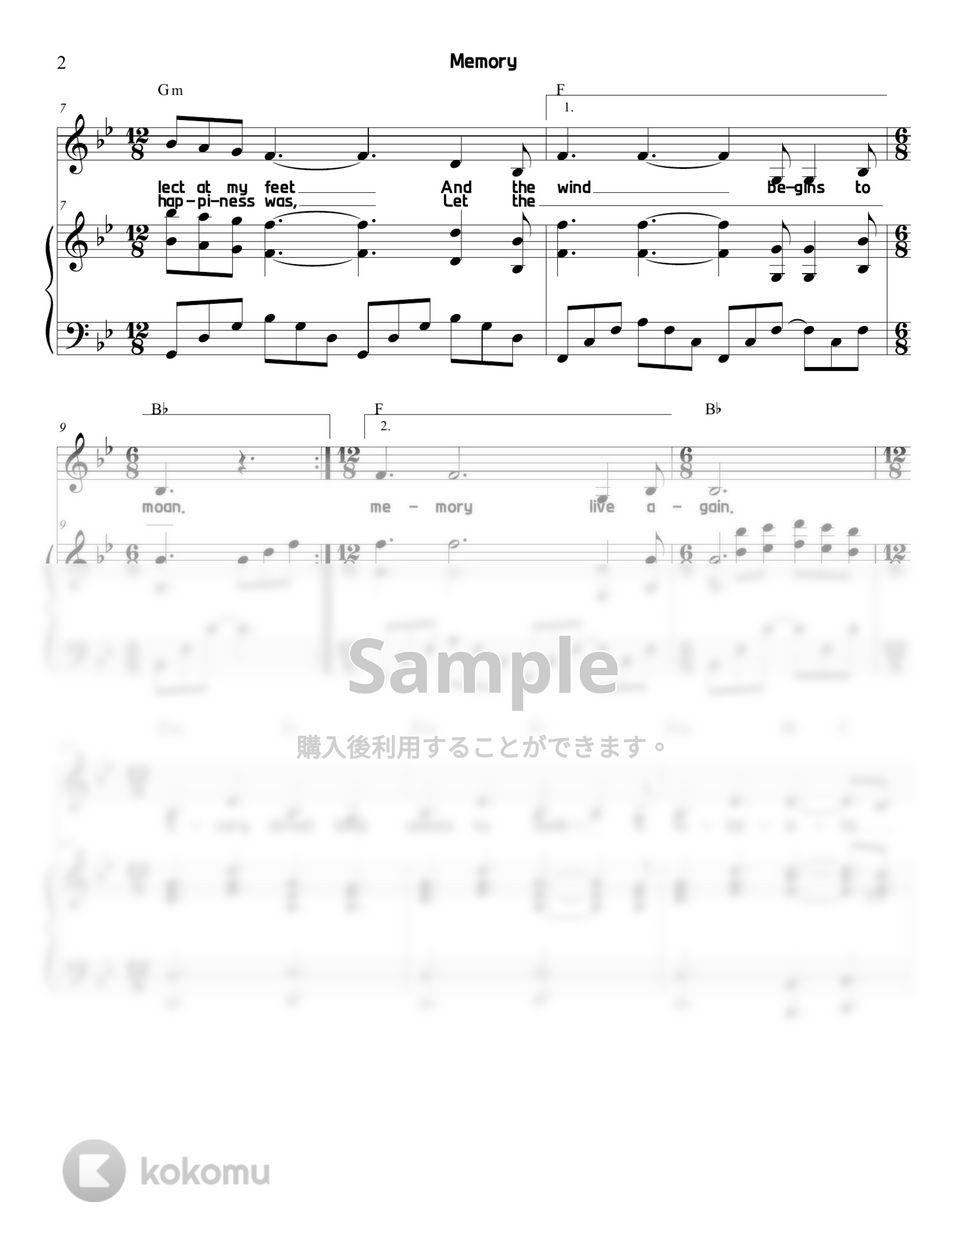 キャッツ - Memory (歌詞付き) by Sunny Fingers Piano